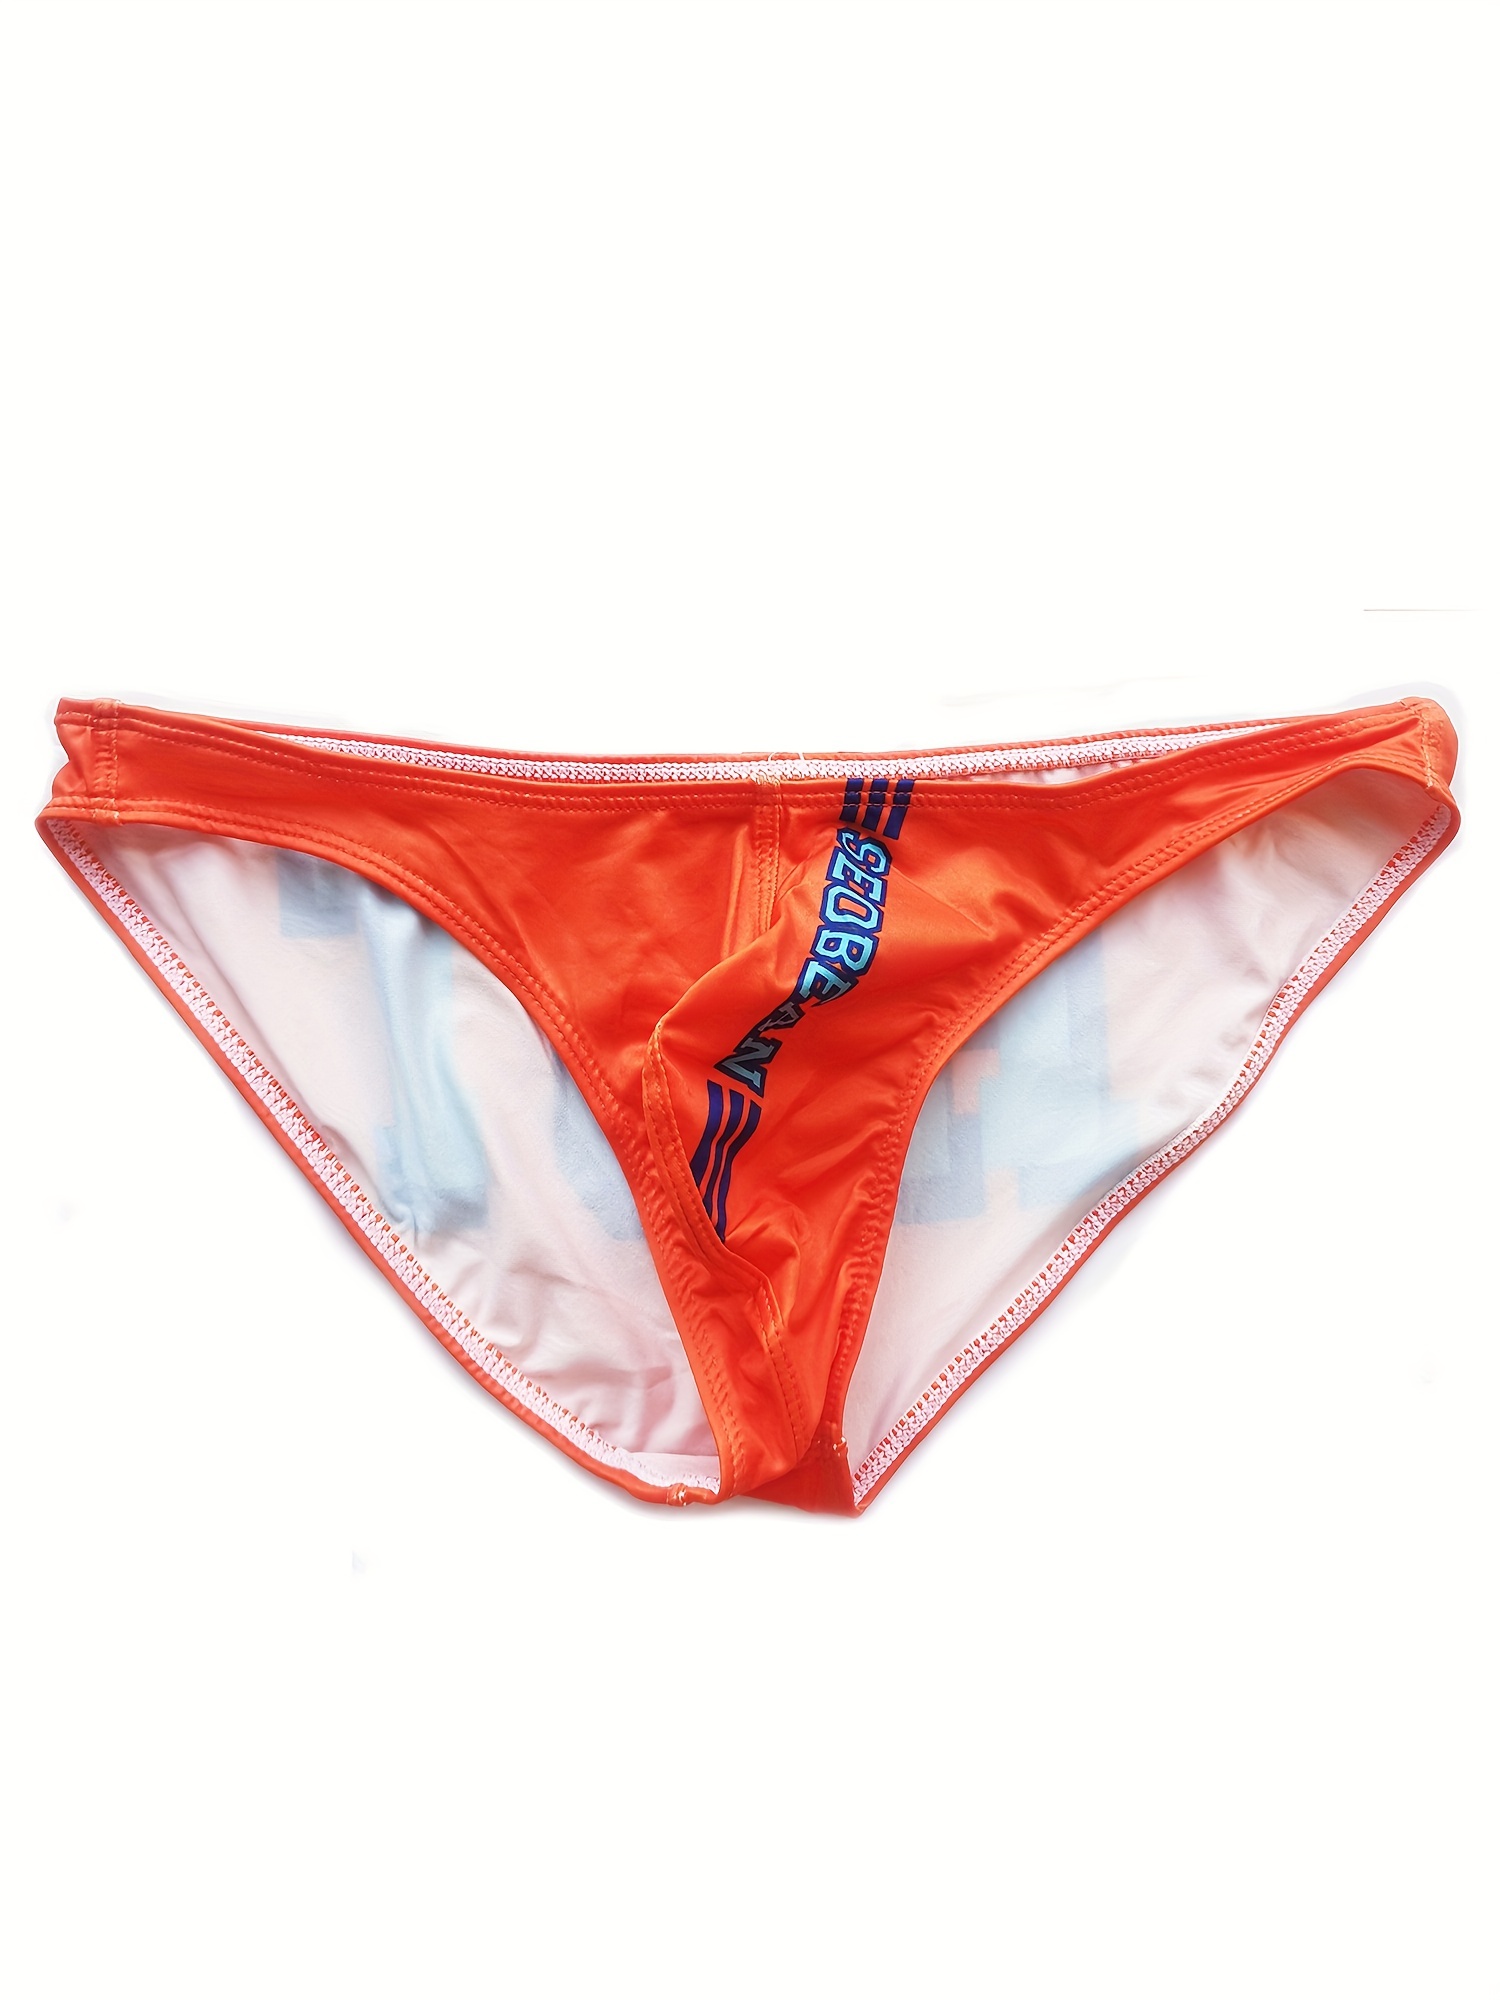 Men's Underwear Ice Silk Sexy Convex Pouch For Men's Briefs